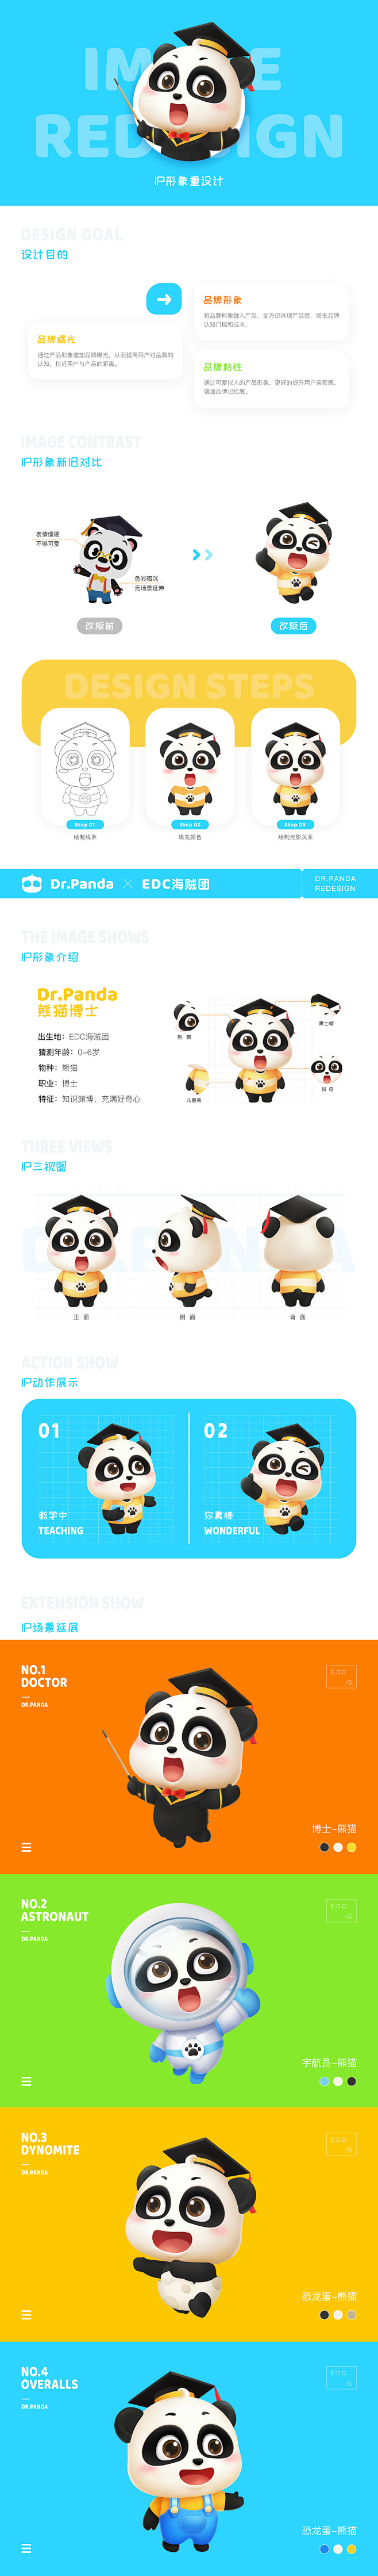 「熊猫博士」页面展示视觉升级 -UI中国...